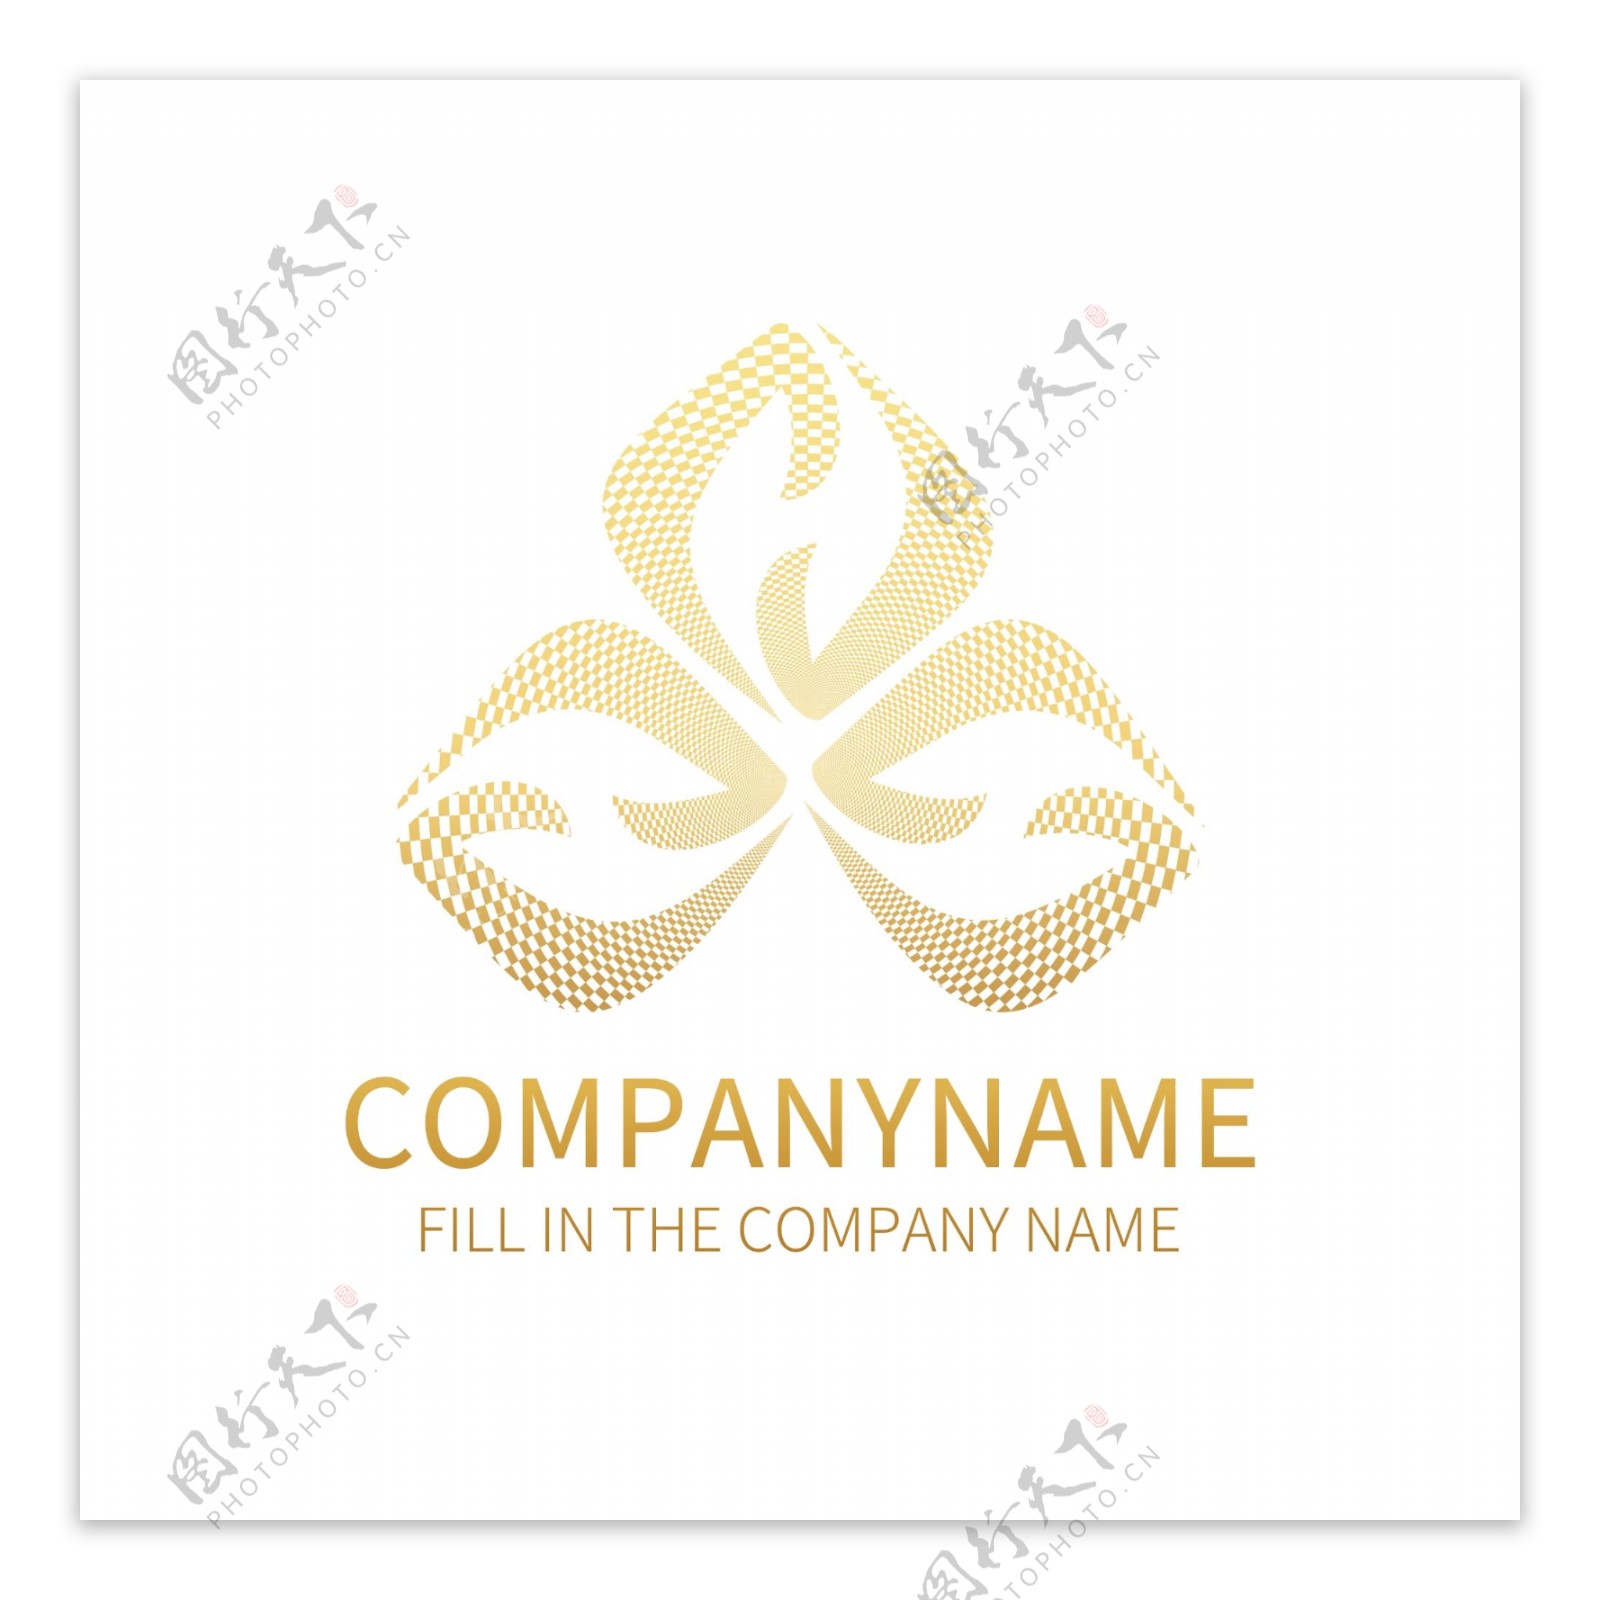 简约商务企业商标logo标识设计